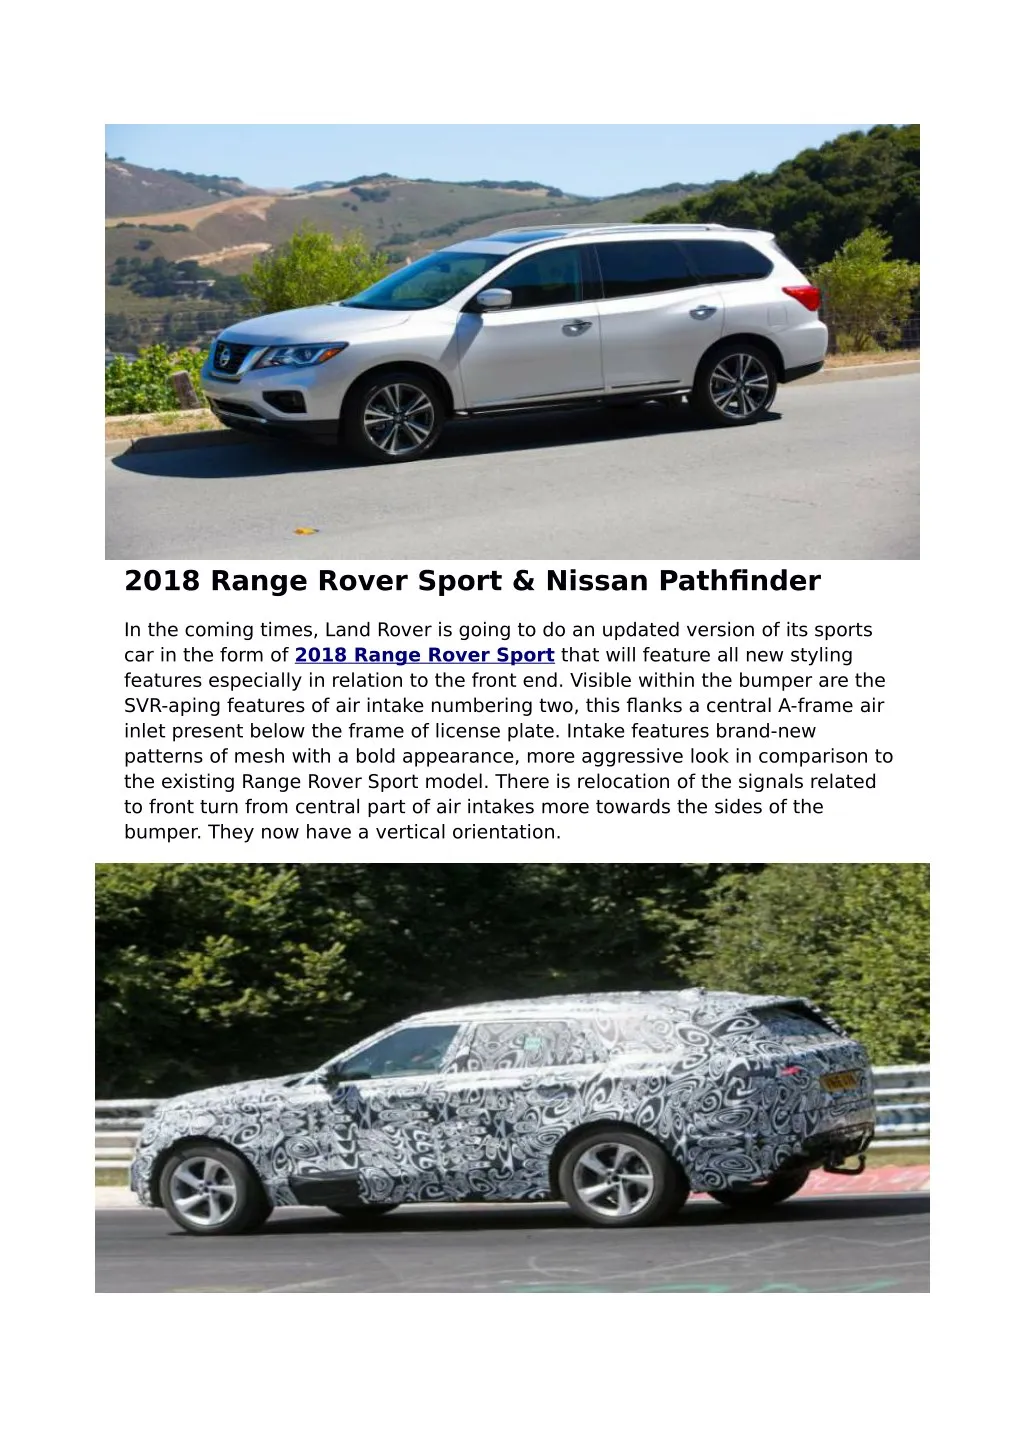 2018 range rover sport nissan pathfinder